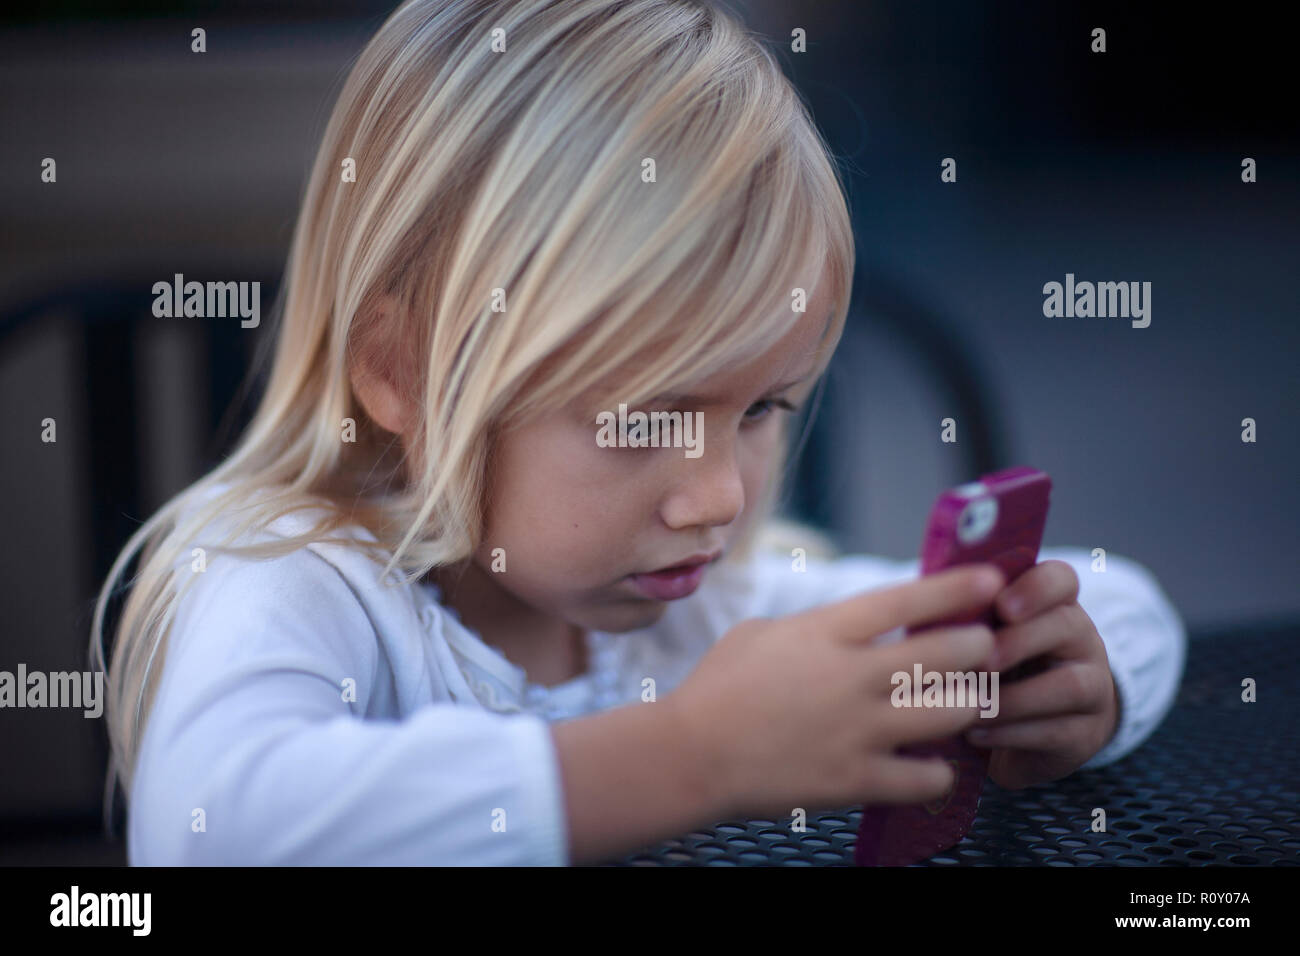 Giovane ragazza bionda guardando rosa telefono cellulare con un intenso sguardo sul suo viso. Foto Stock